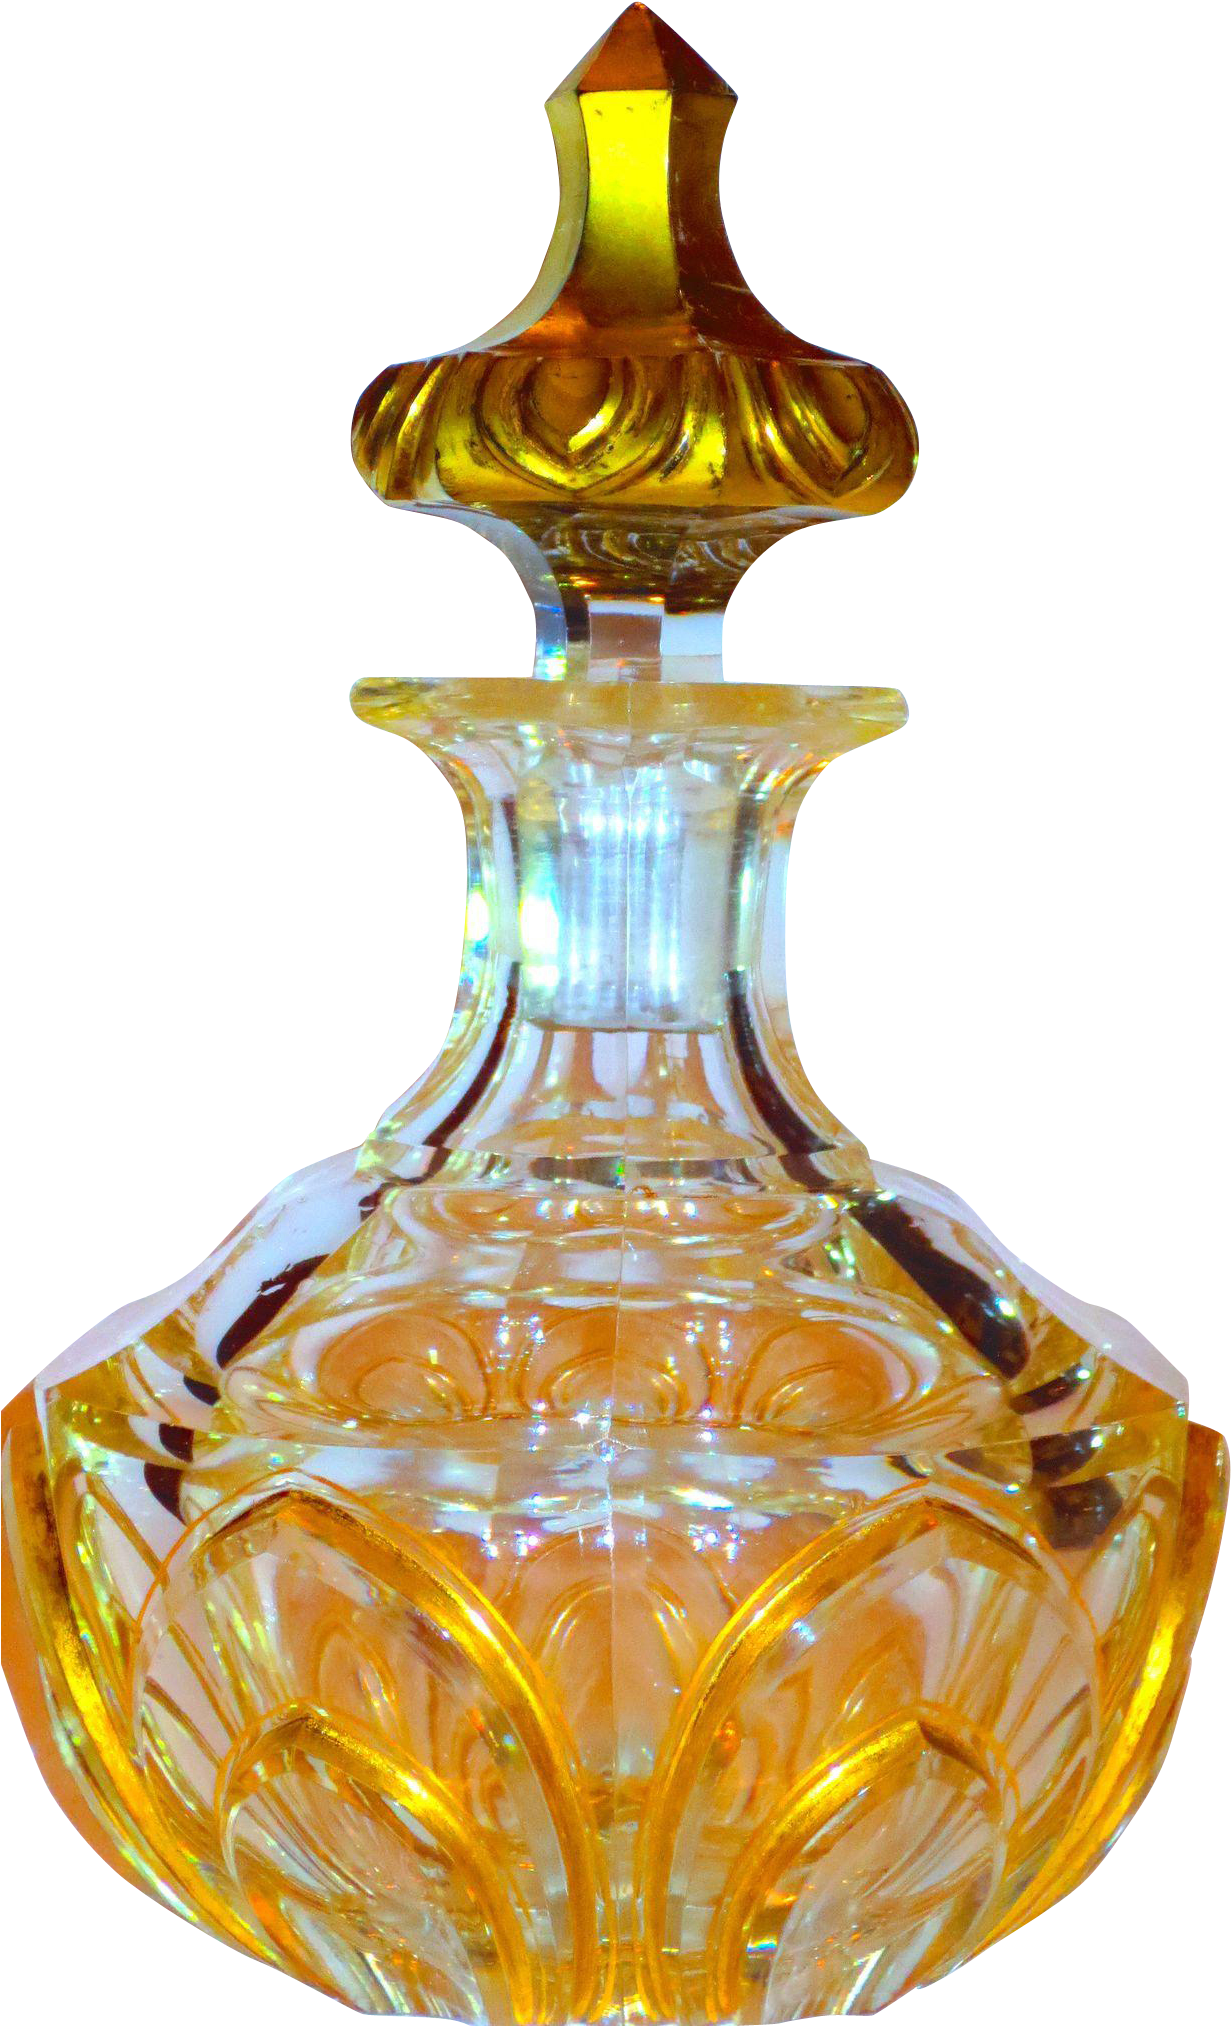 Elegant Perfume Bottle